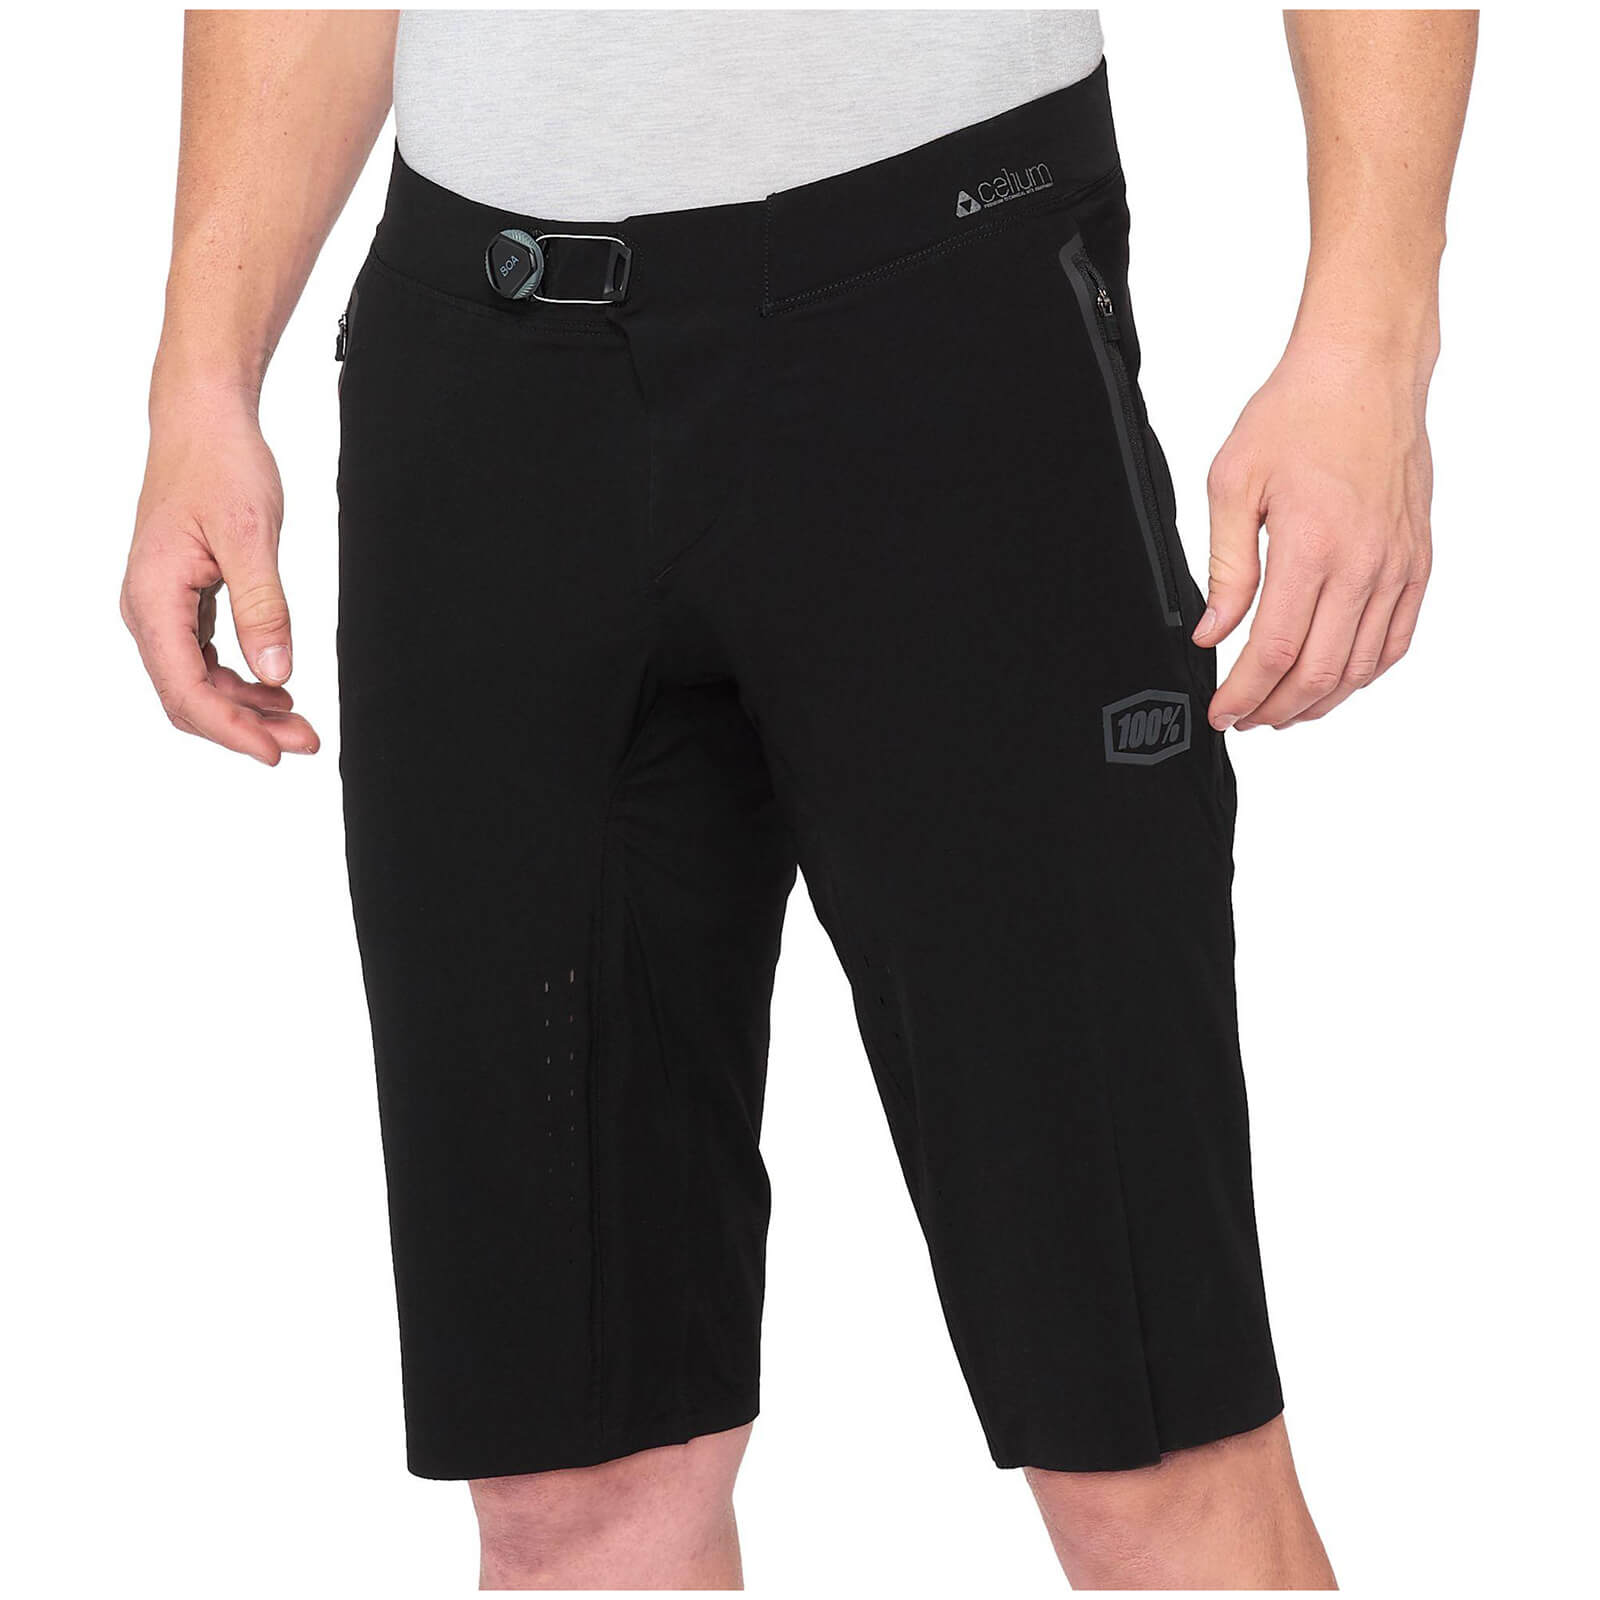 100% Celium MTB Shorts - 30 - Black